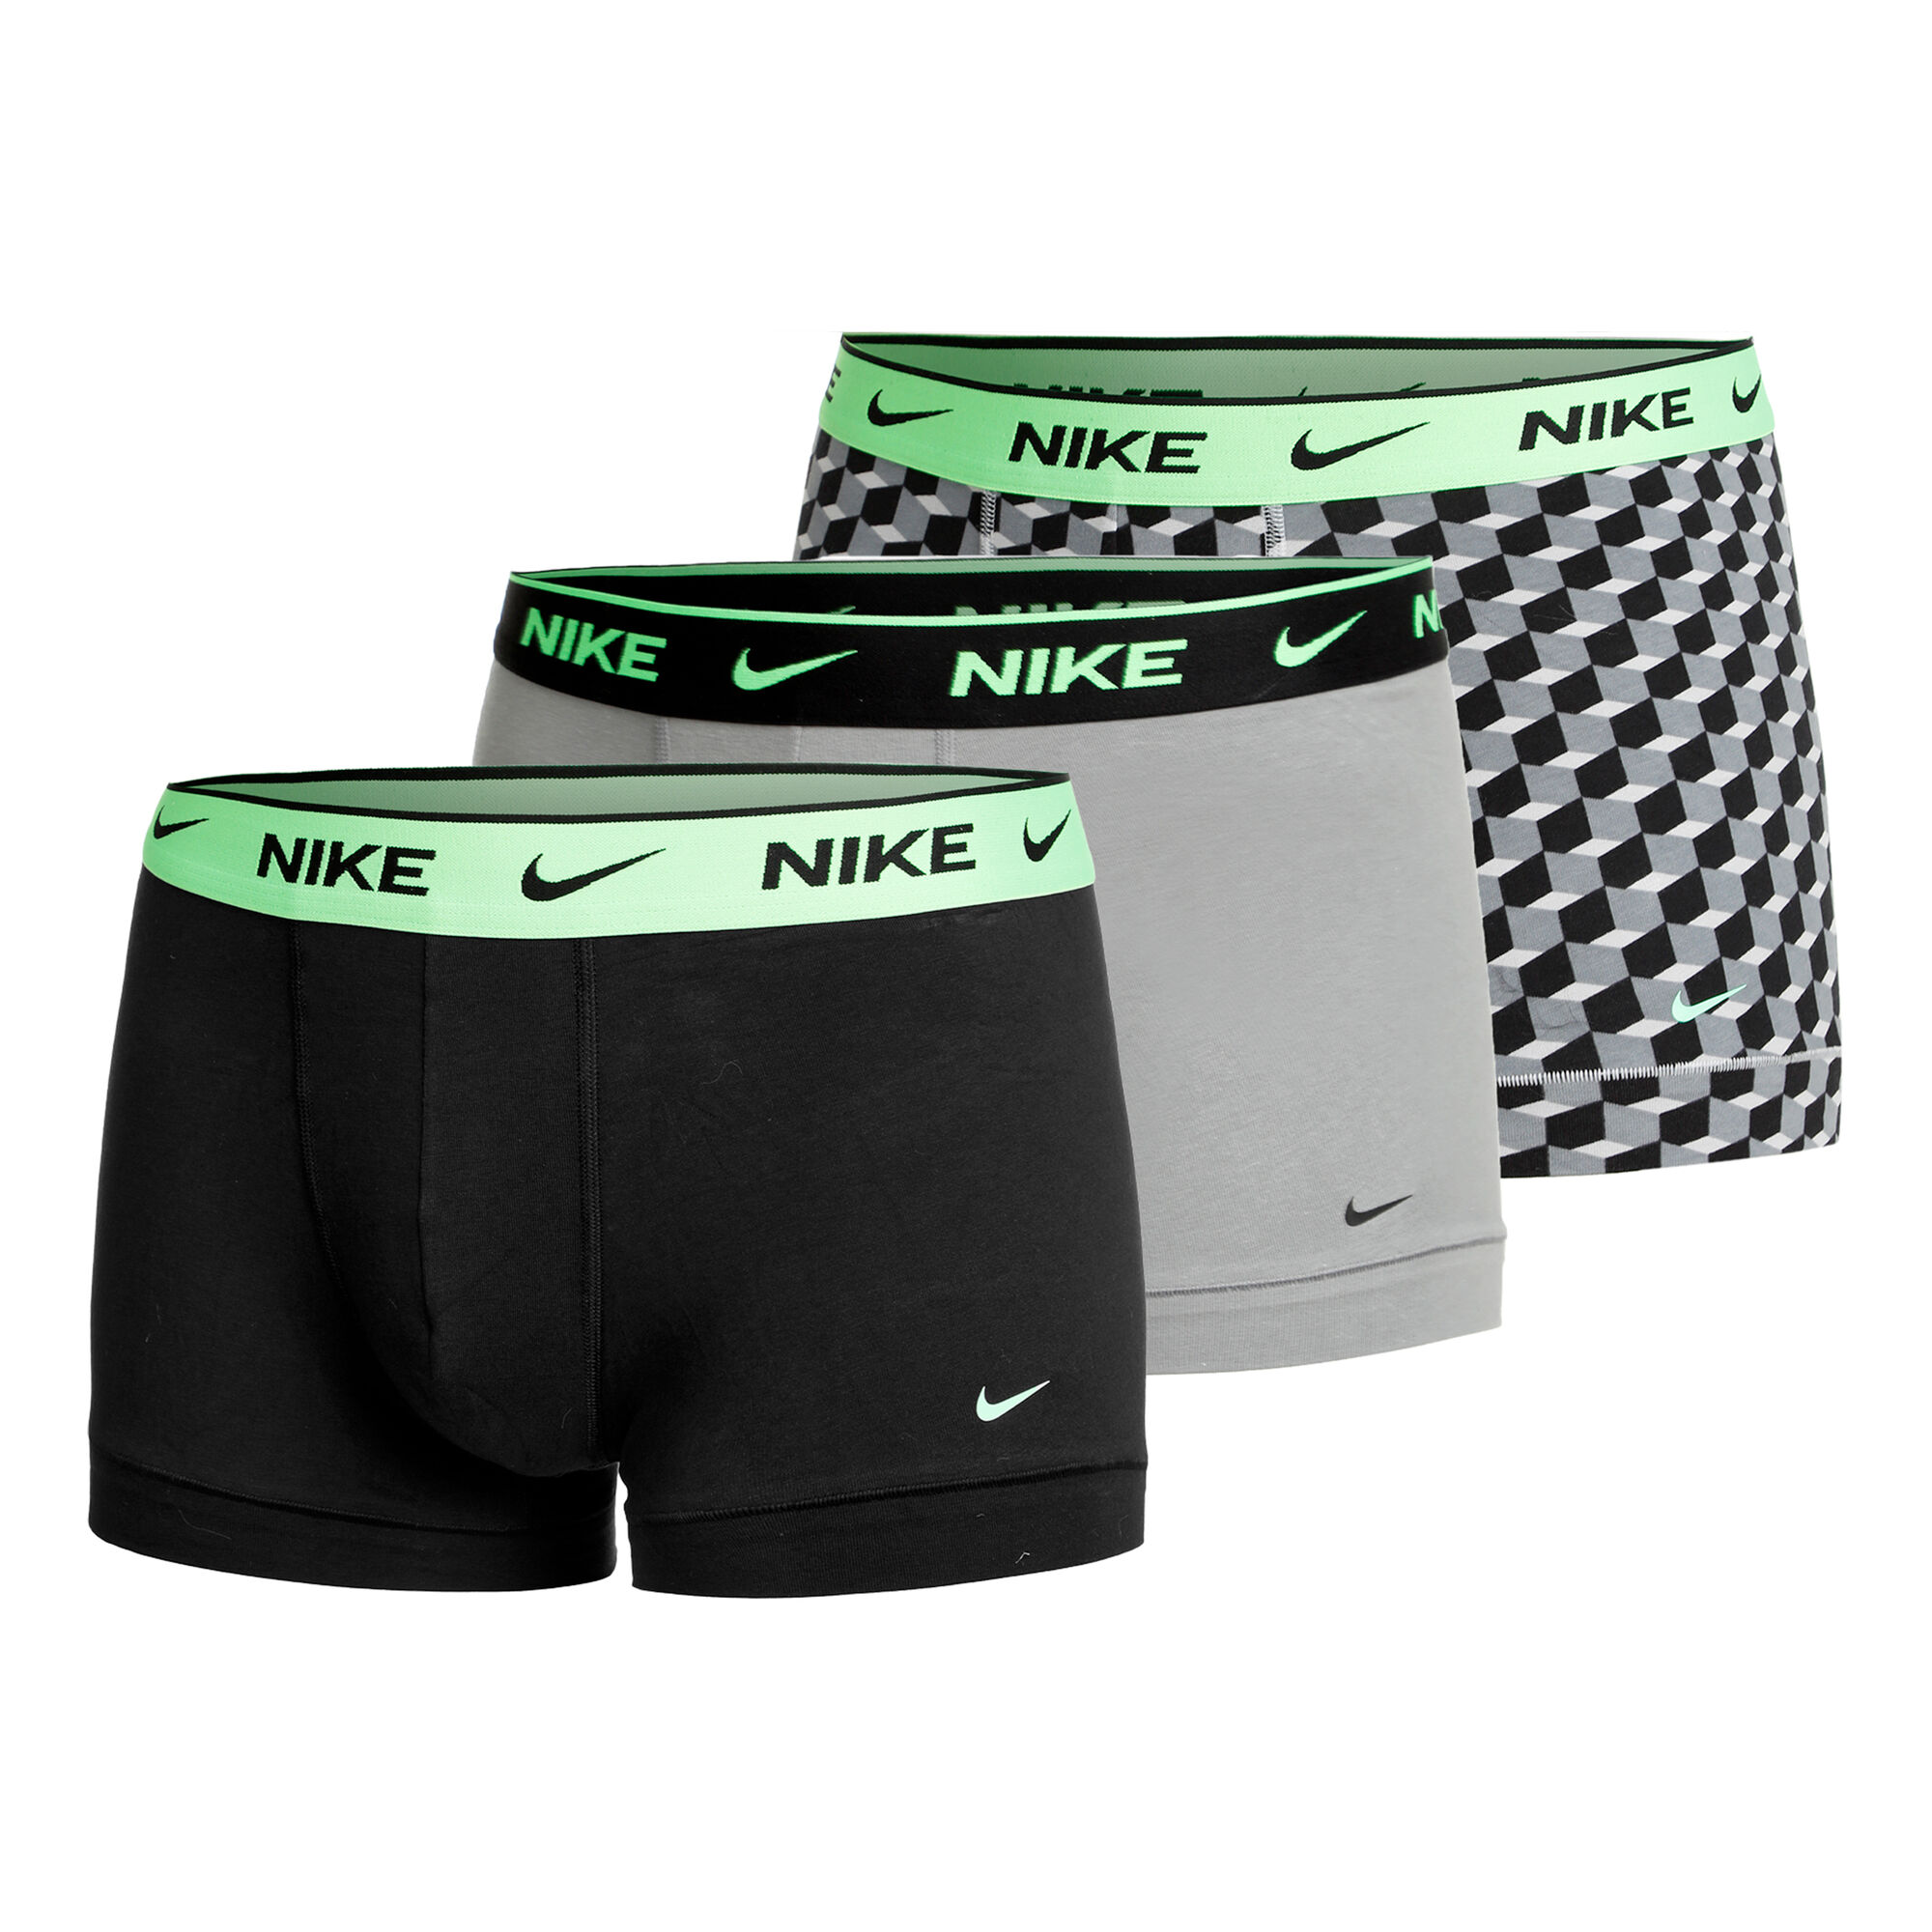 Nike Everyday Cotton Stretch Trunk Boxer Short 3er Pack Herren Grau,  Neongrün online kaufen | Tennis Point DE